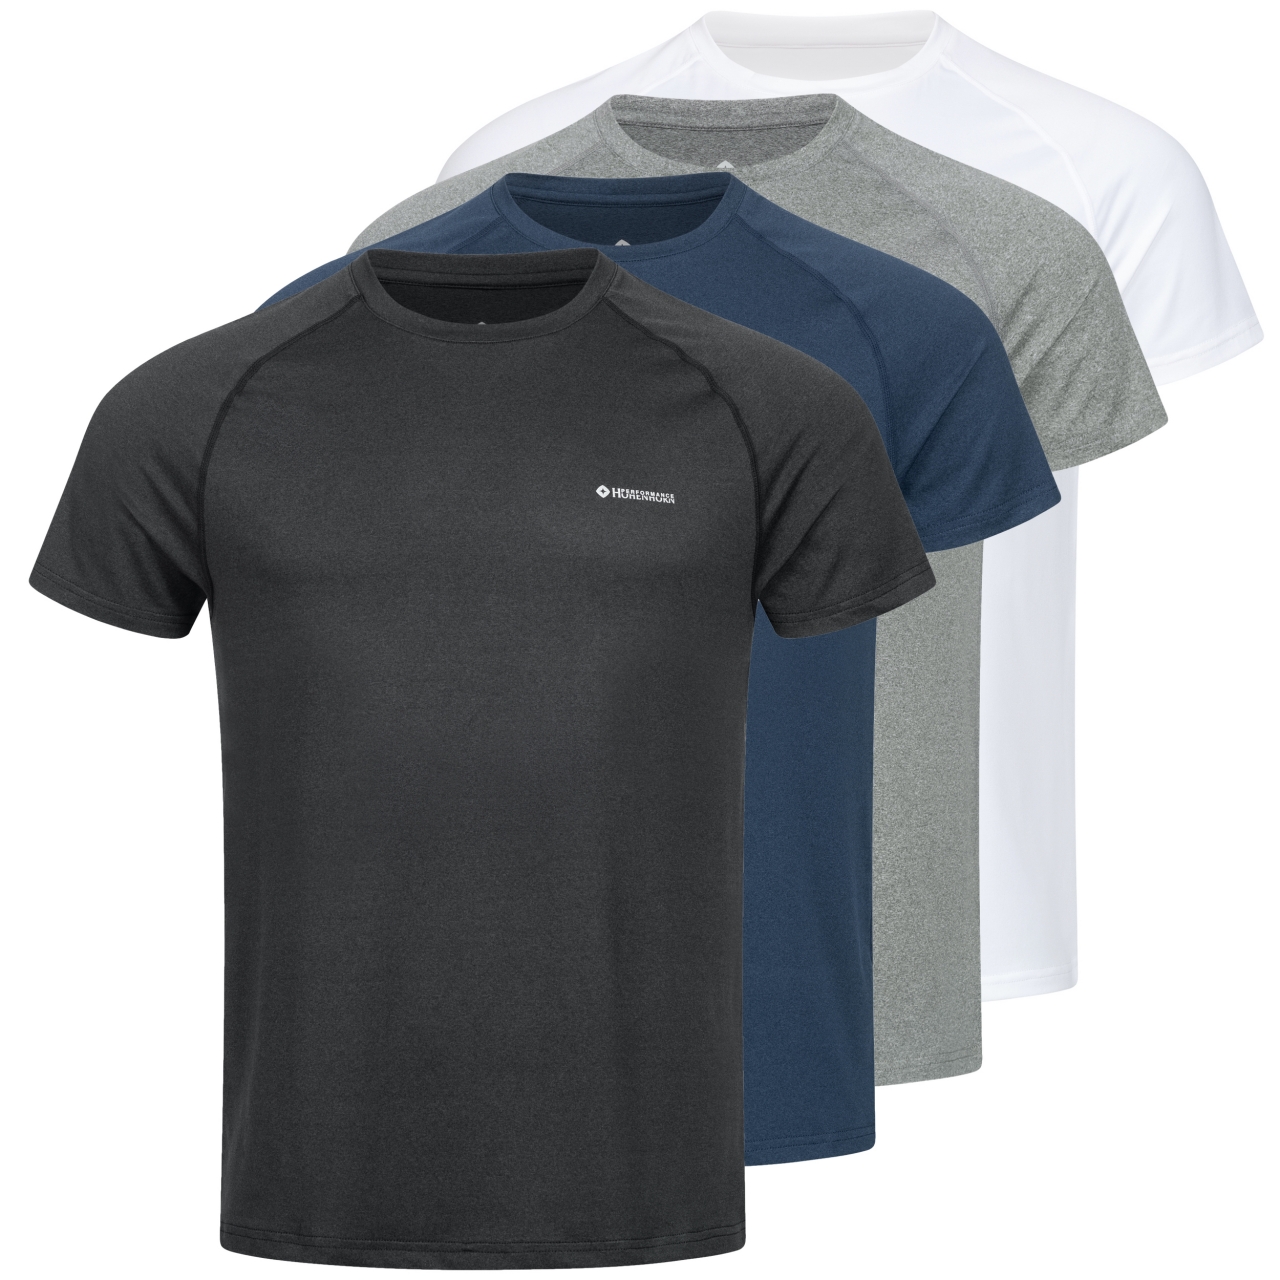 Höhenhorn Kannin Herren T-Shirt Laufshirt Fitness aus Recyceltem Material L Dunkelgrau von Höhenhorn